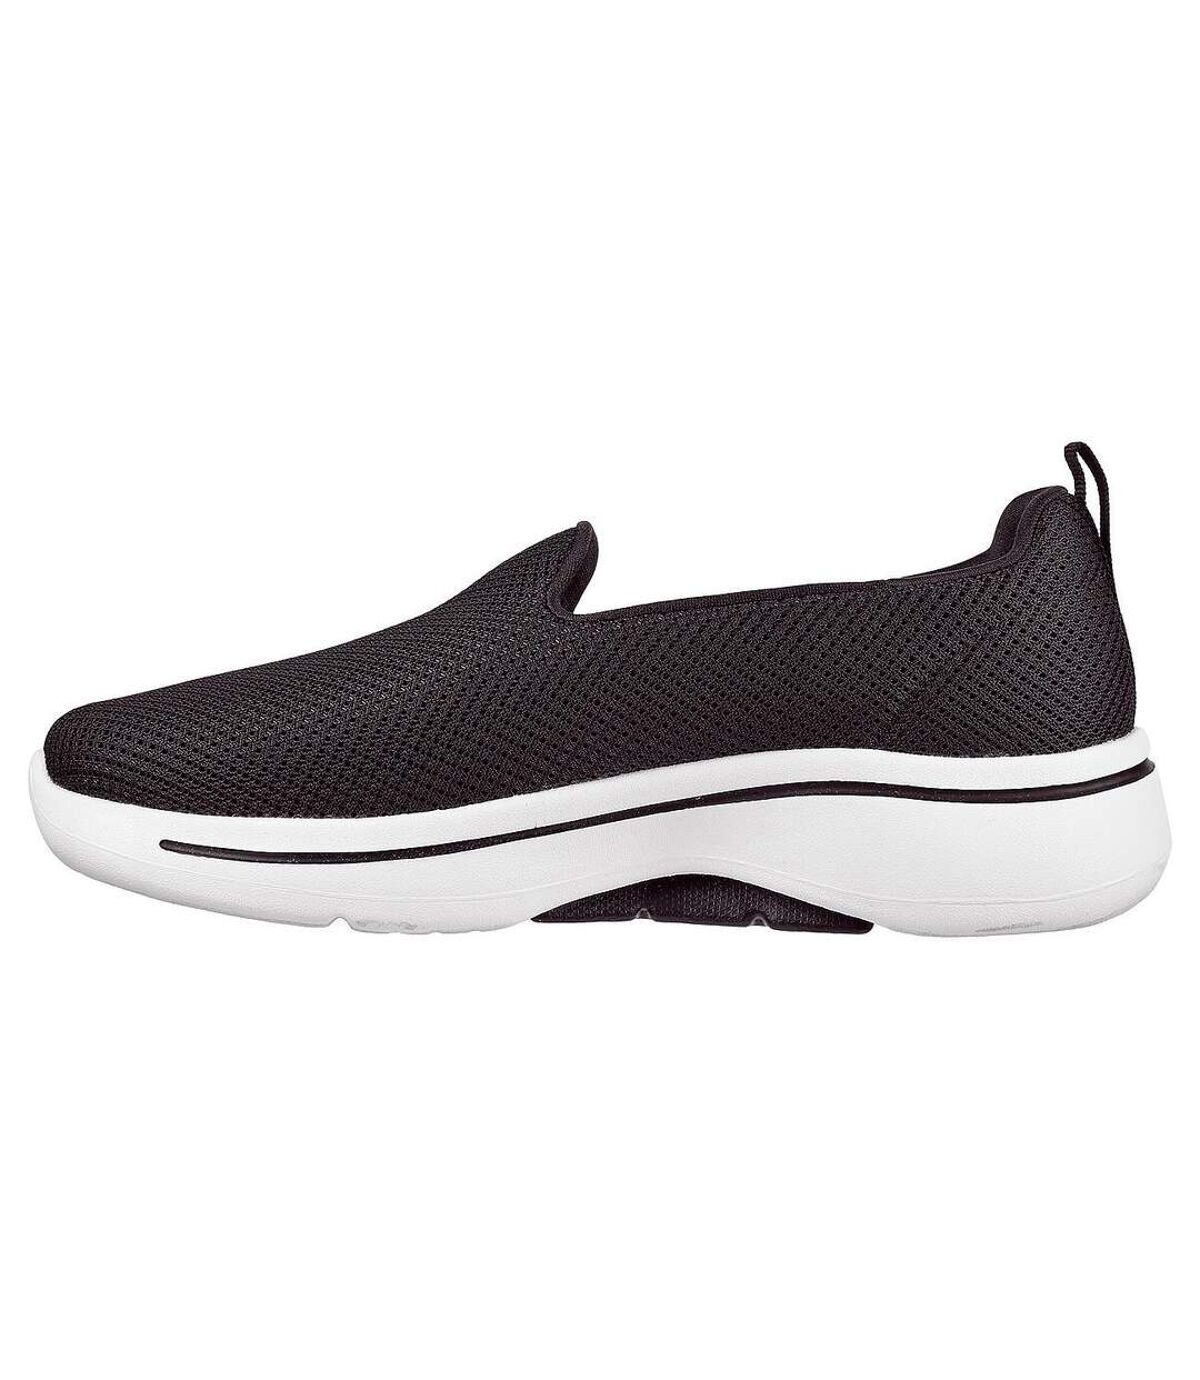 Skechers Womens/Ladies GOwalk Arch Fit Grateful Sneakers (Black) - UTFS8014